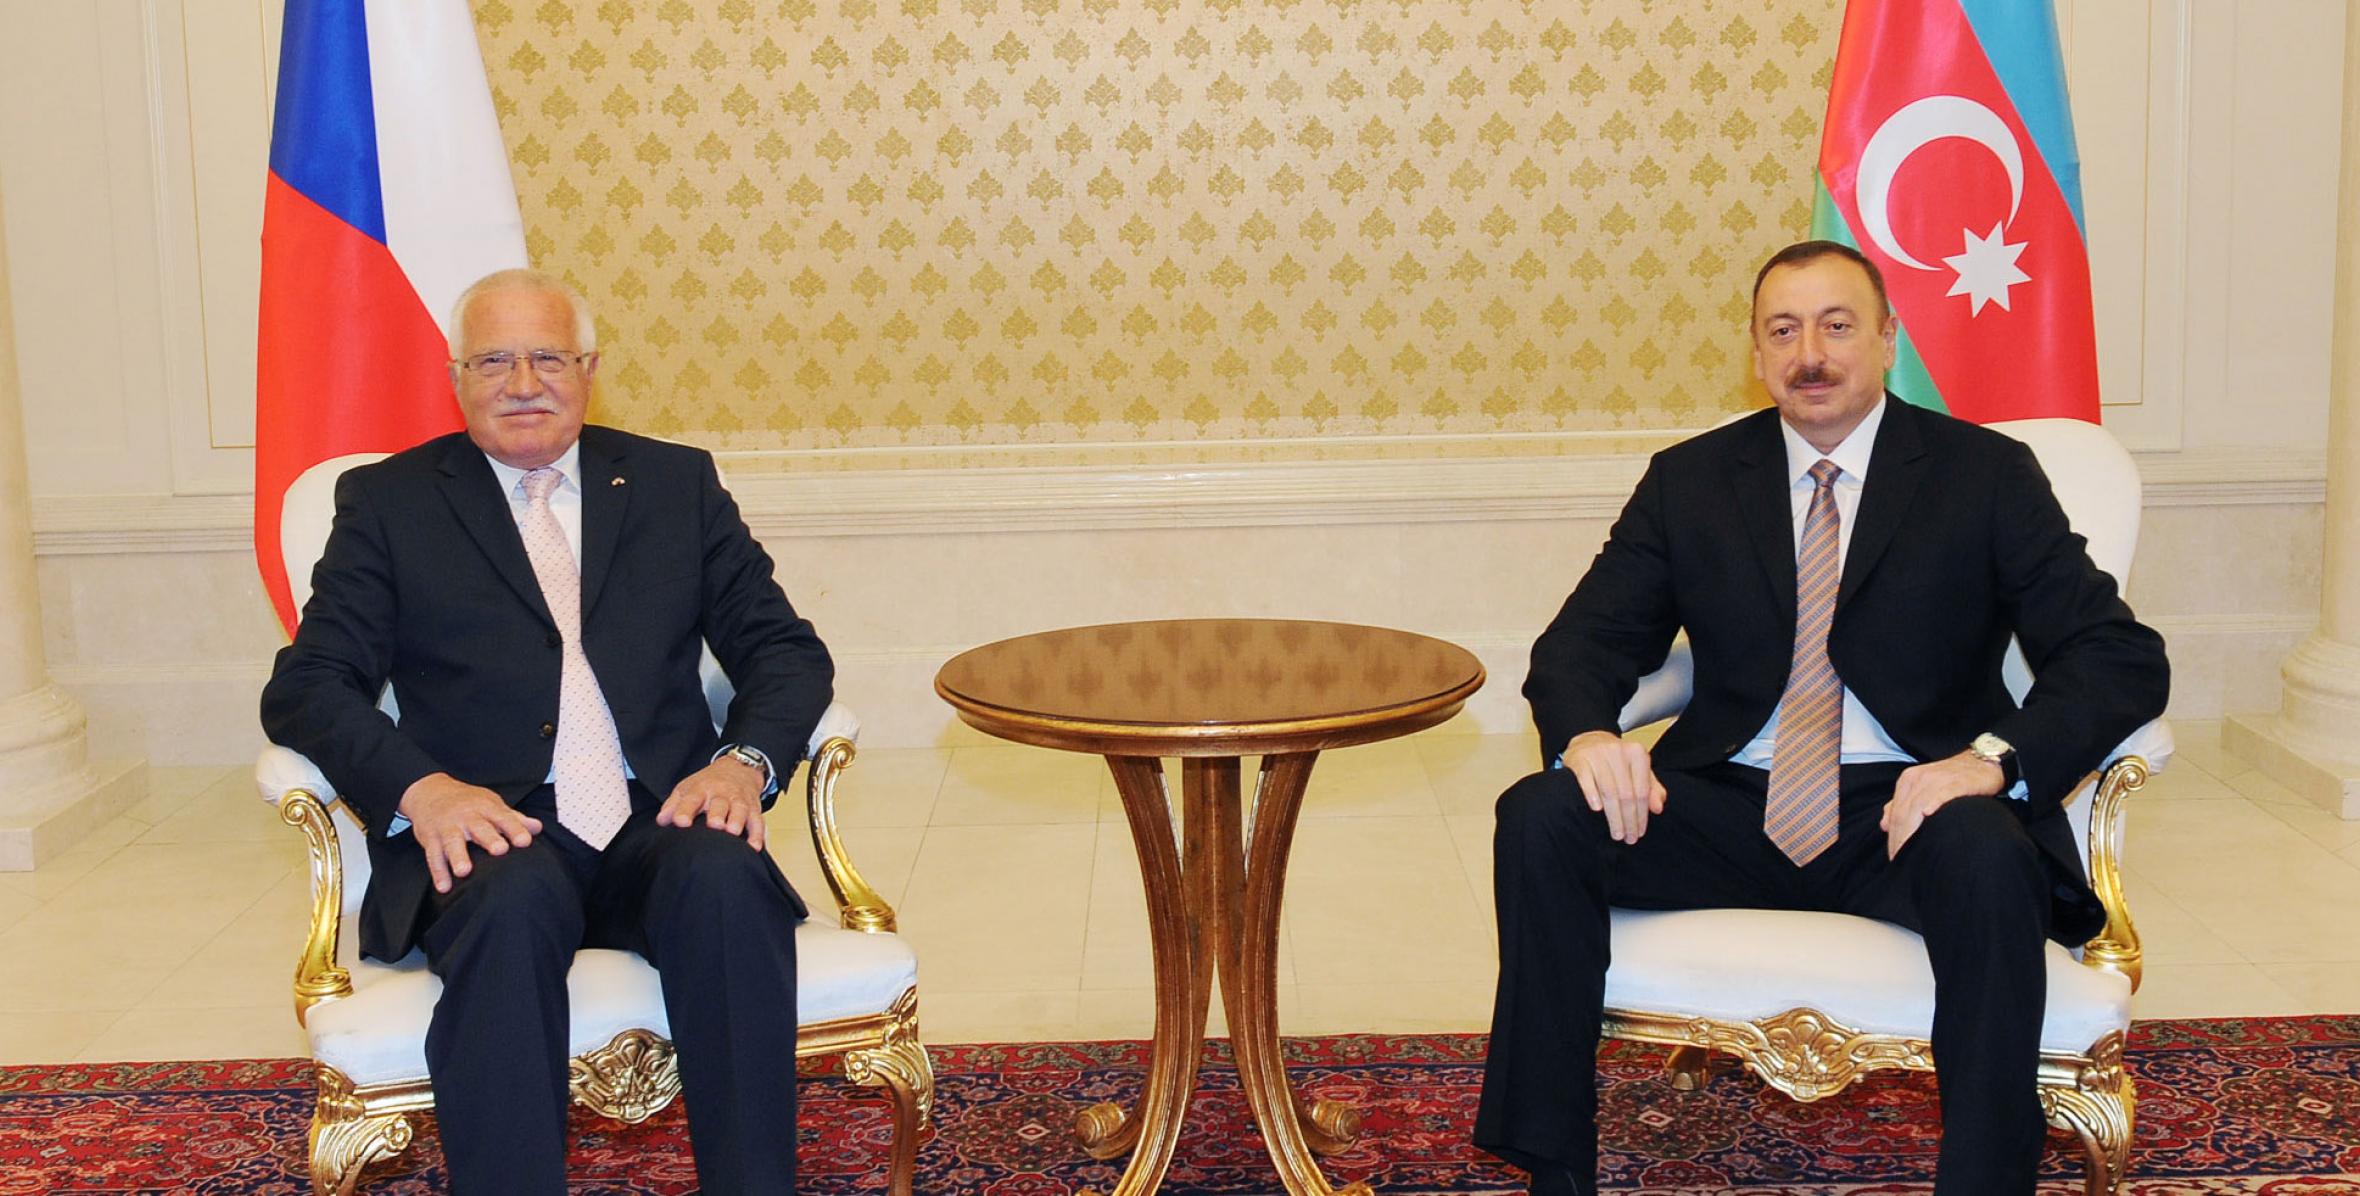 Состоялась встреча Ильхама Алиева и Президента Чешской Республики Вацлава Клауса один на один